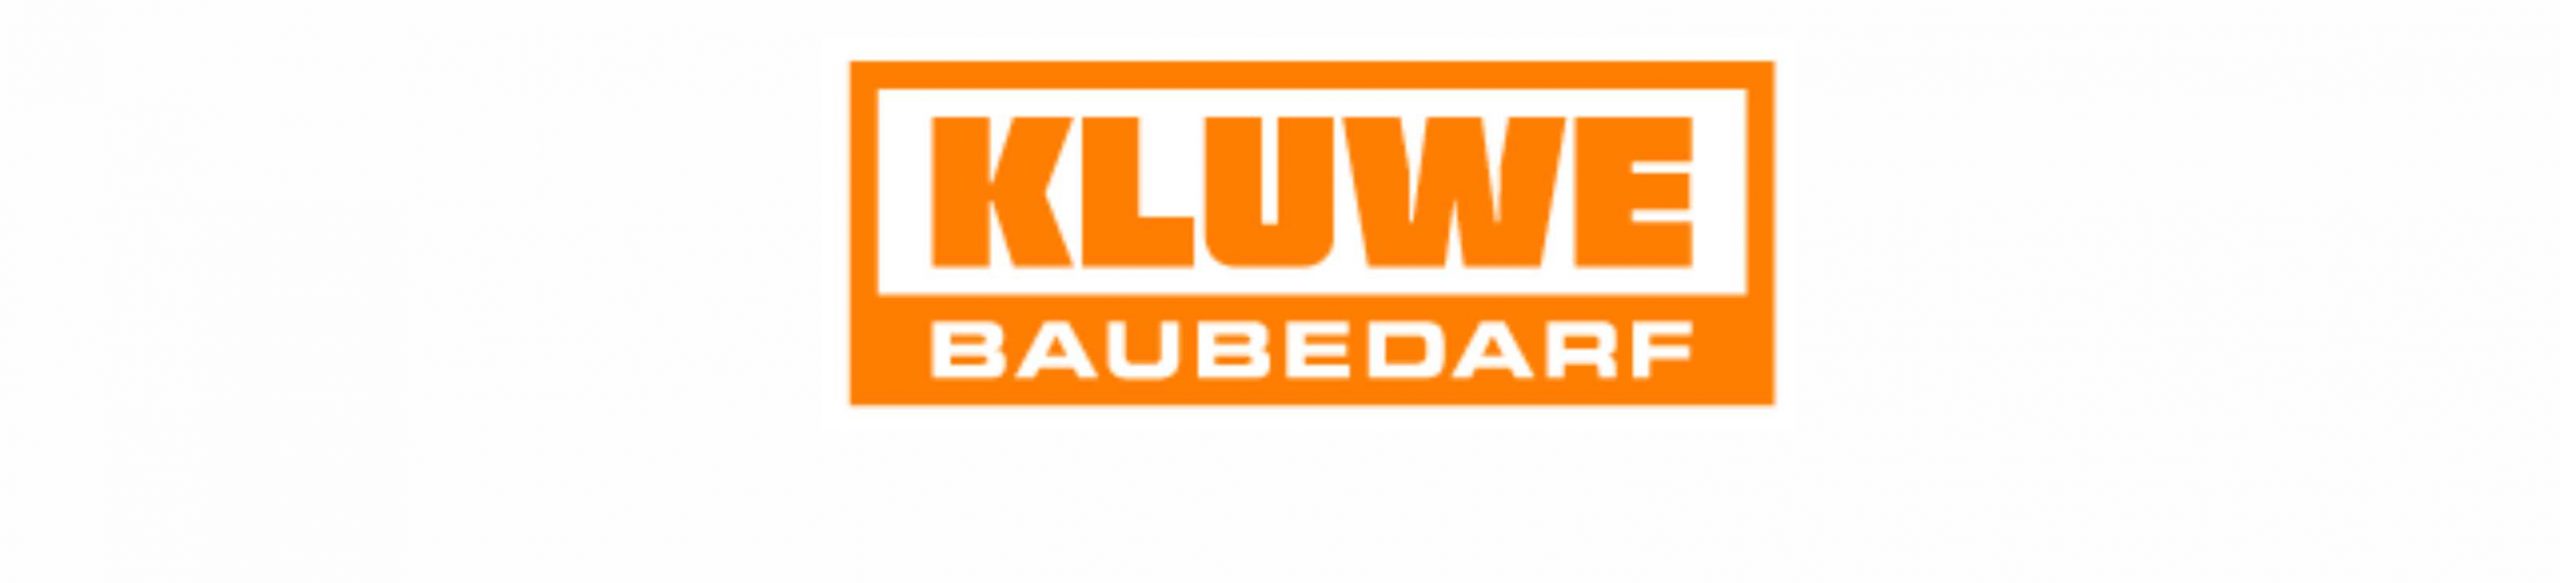 Kluwe Baubedarf GmbH & Co. KG - Isernhagen